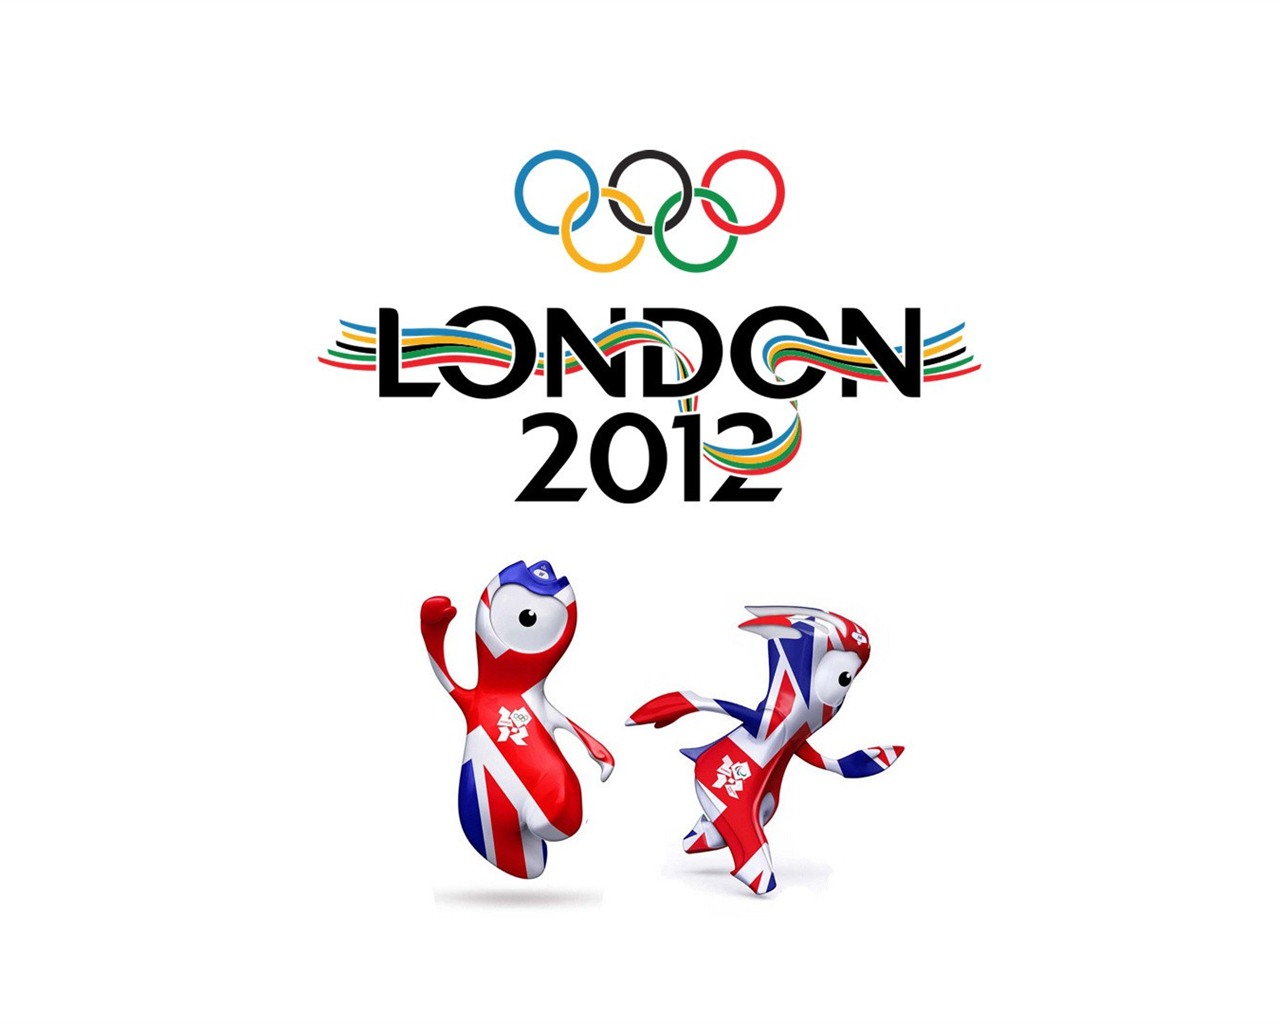 Londres 2012 Olimpiadas fondos temáticos (2) #20 - 1280x1024